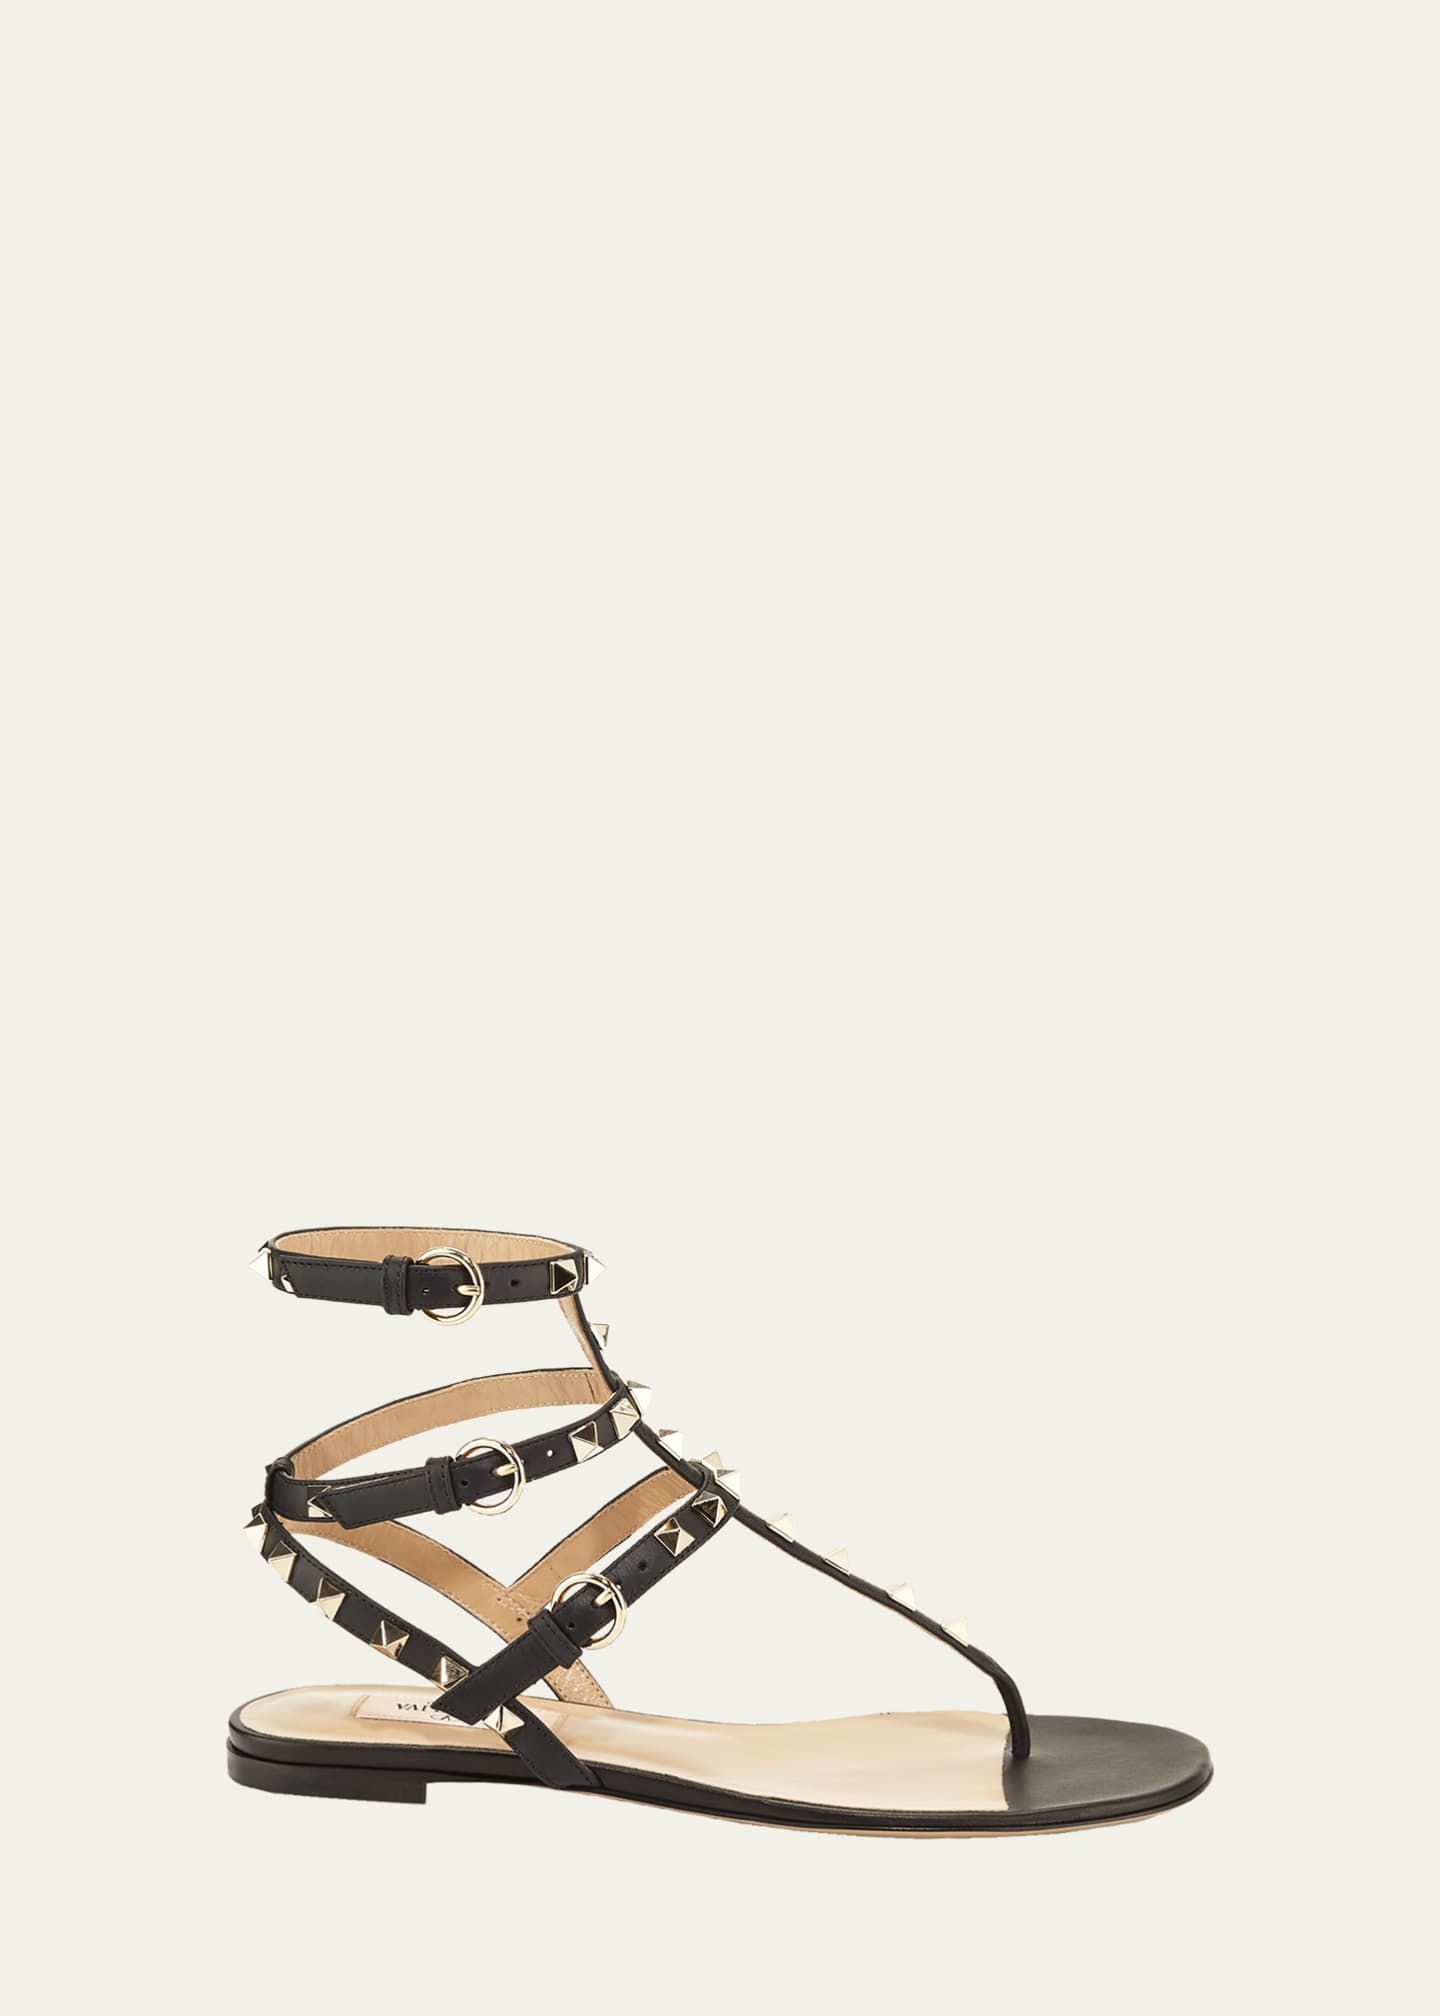 Valentino Garavani Women's Designer Sandals collection